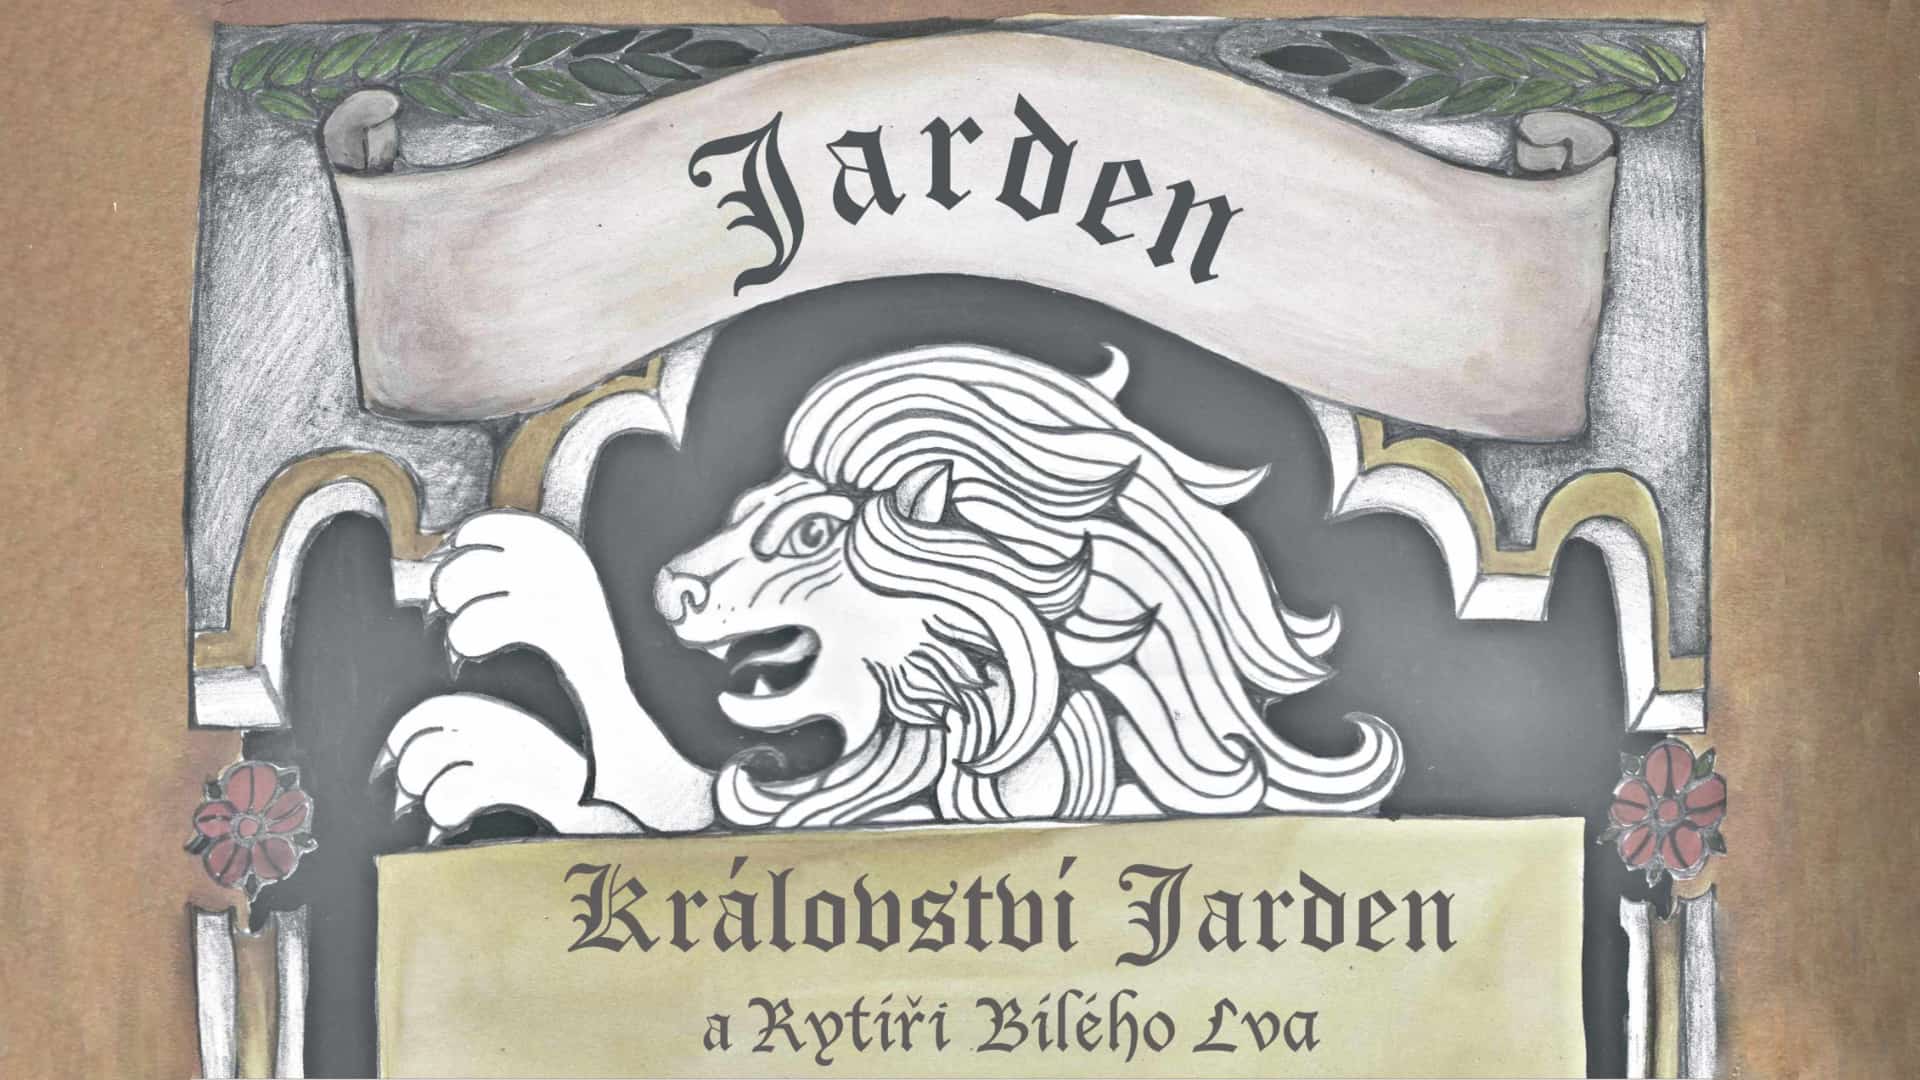 Království Jarden a rytíři Bílého lva 12